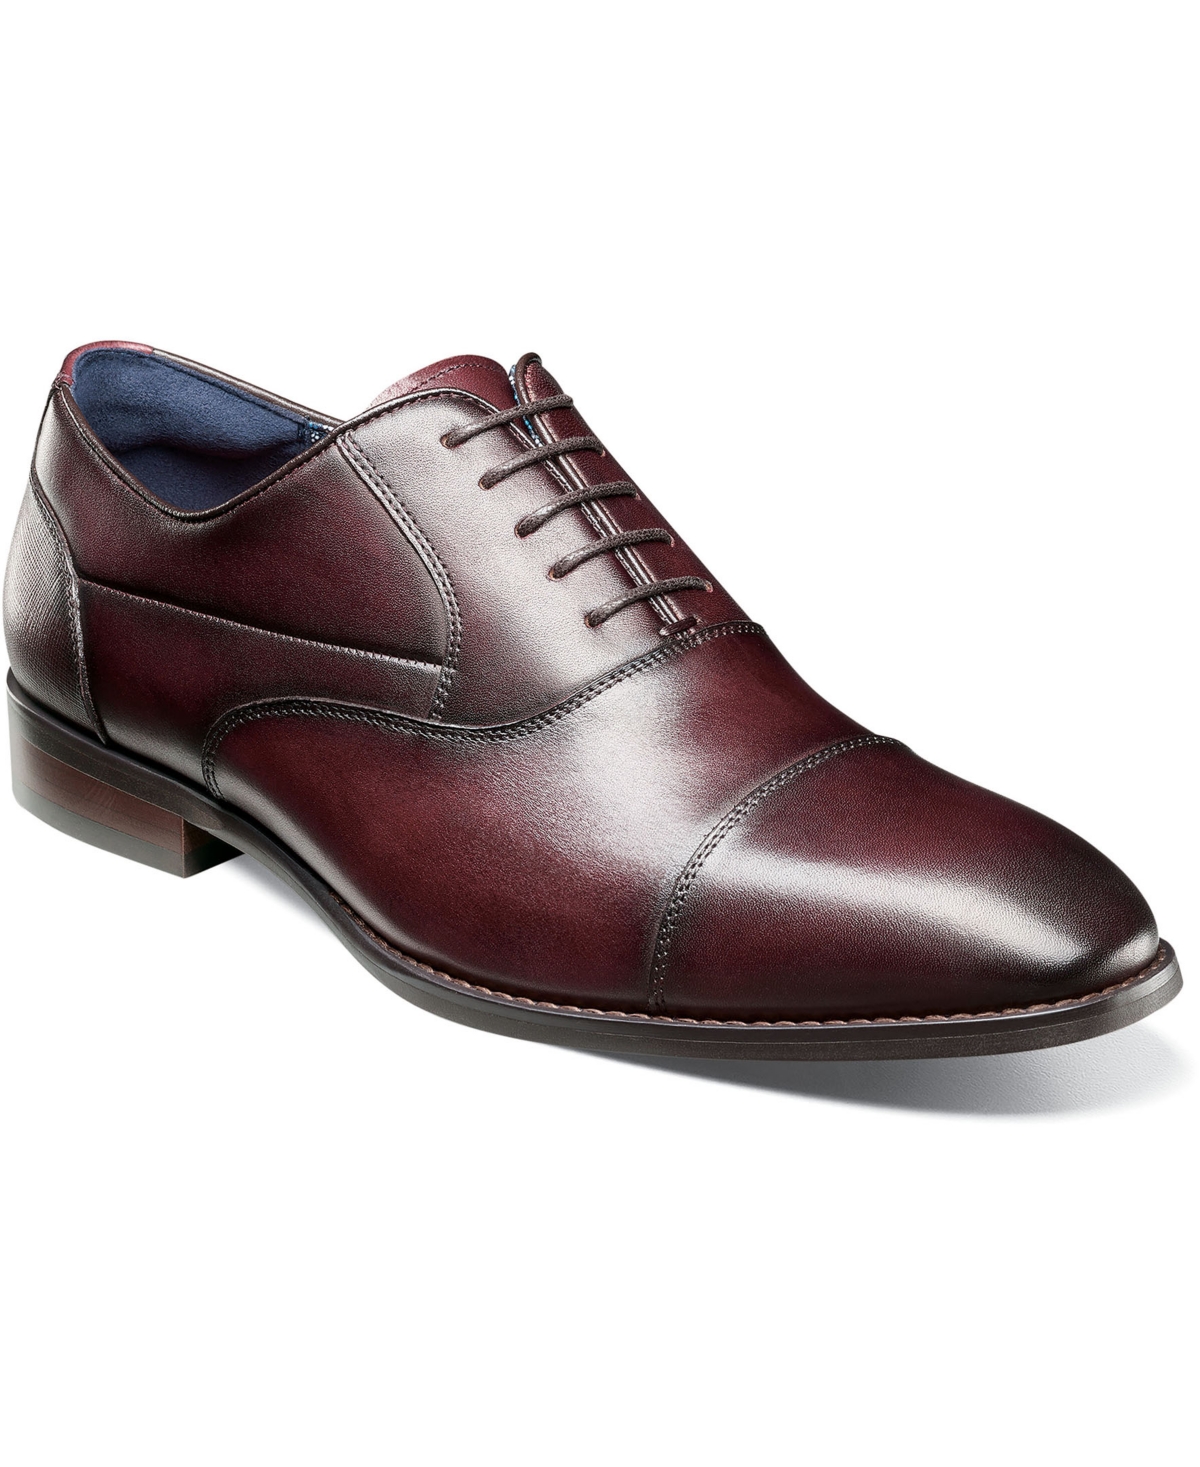 Men's Kallum Cap-Toe Oxford Dress Shoe - Burgundy